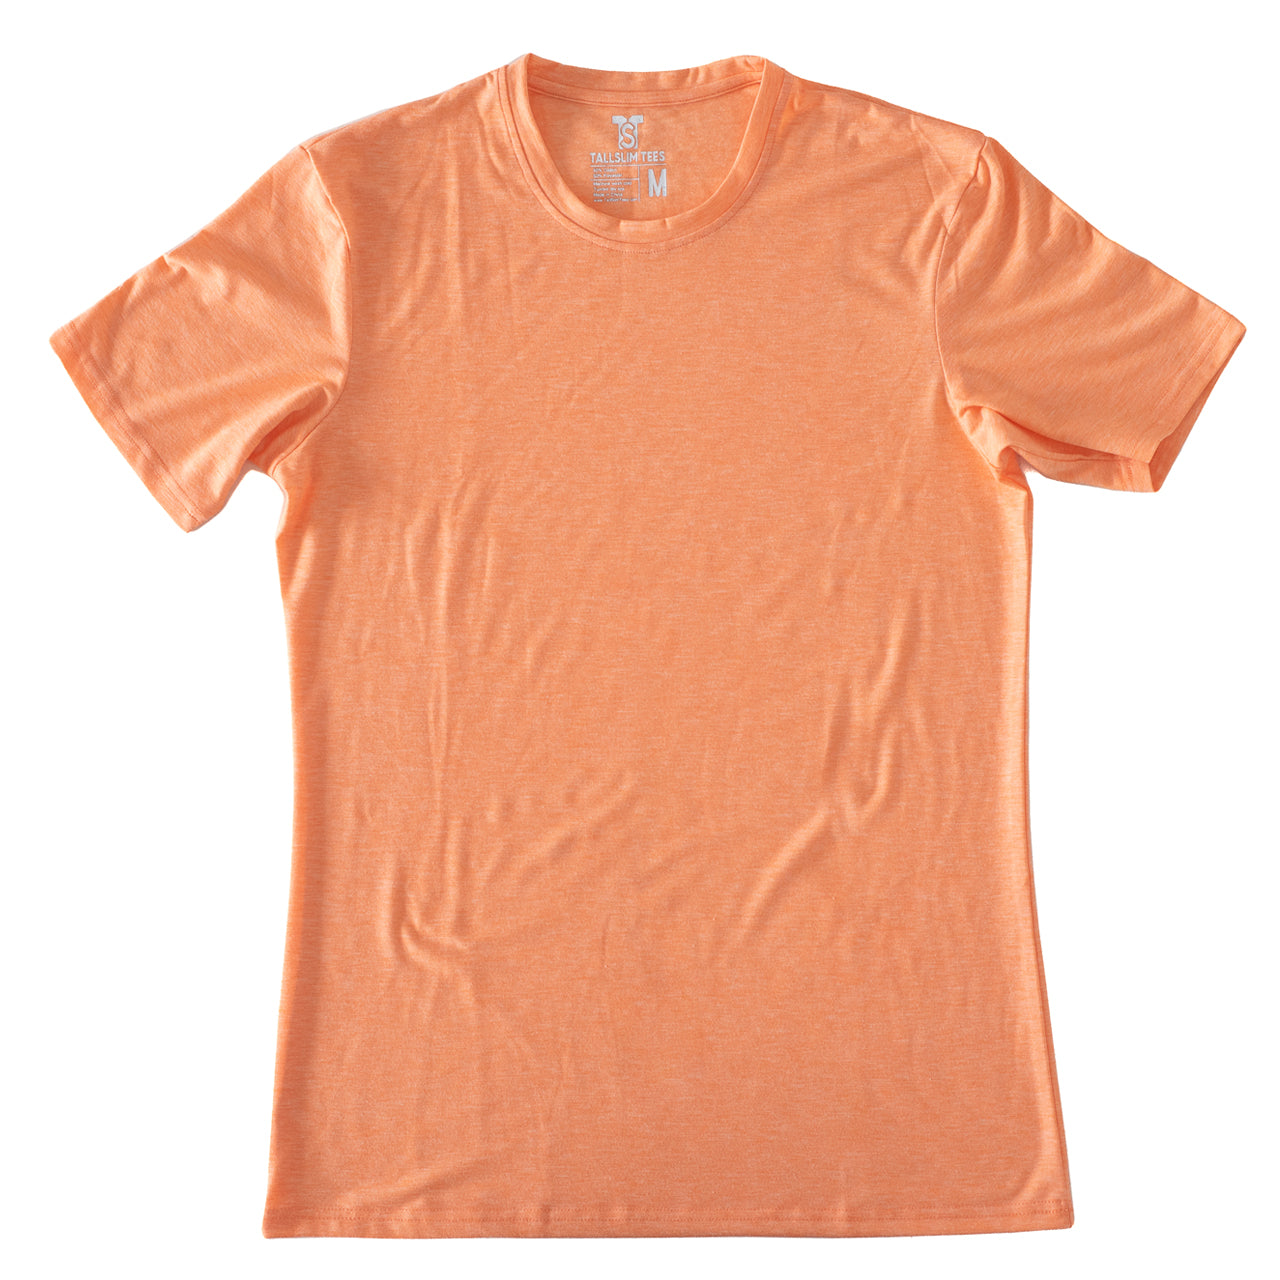 Orange Crew Neck Shirt for Tall Slim Men